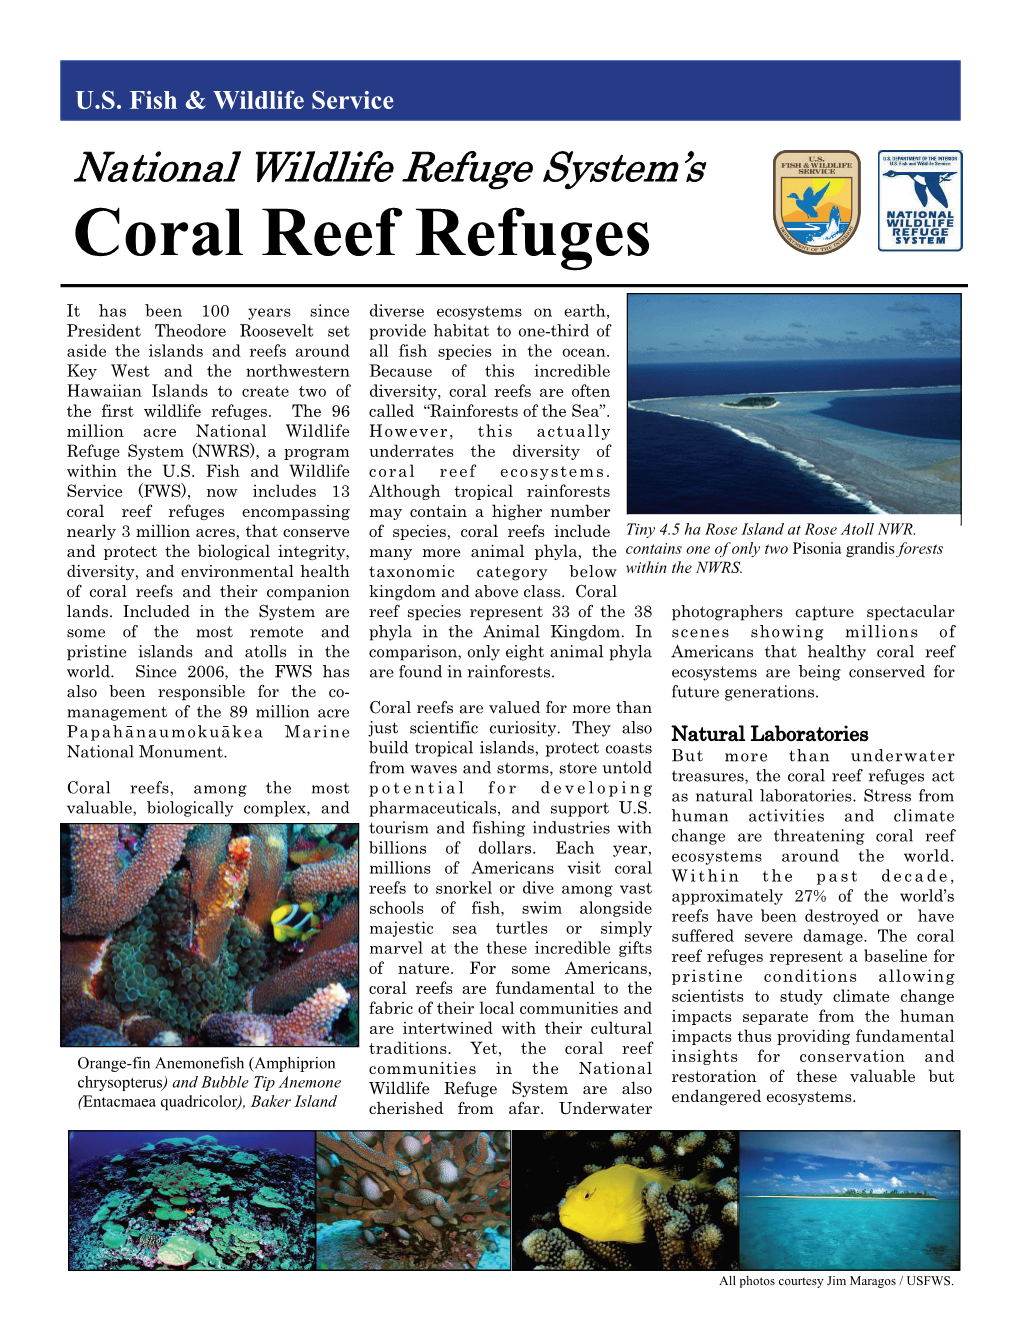 Coral Reef Refuges